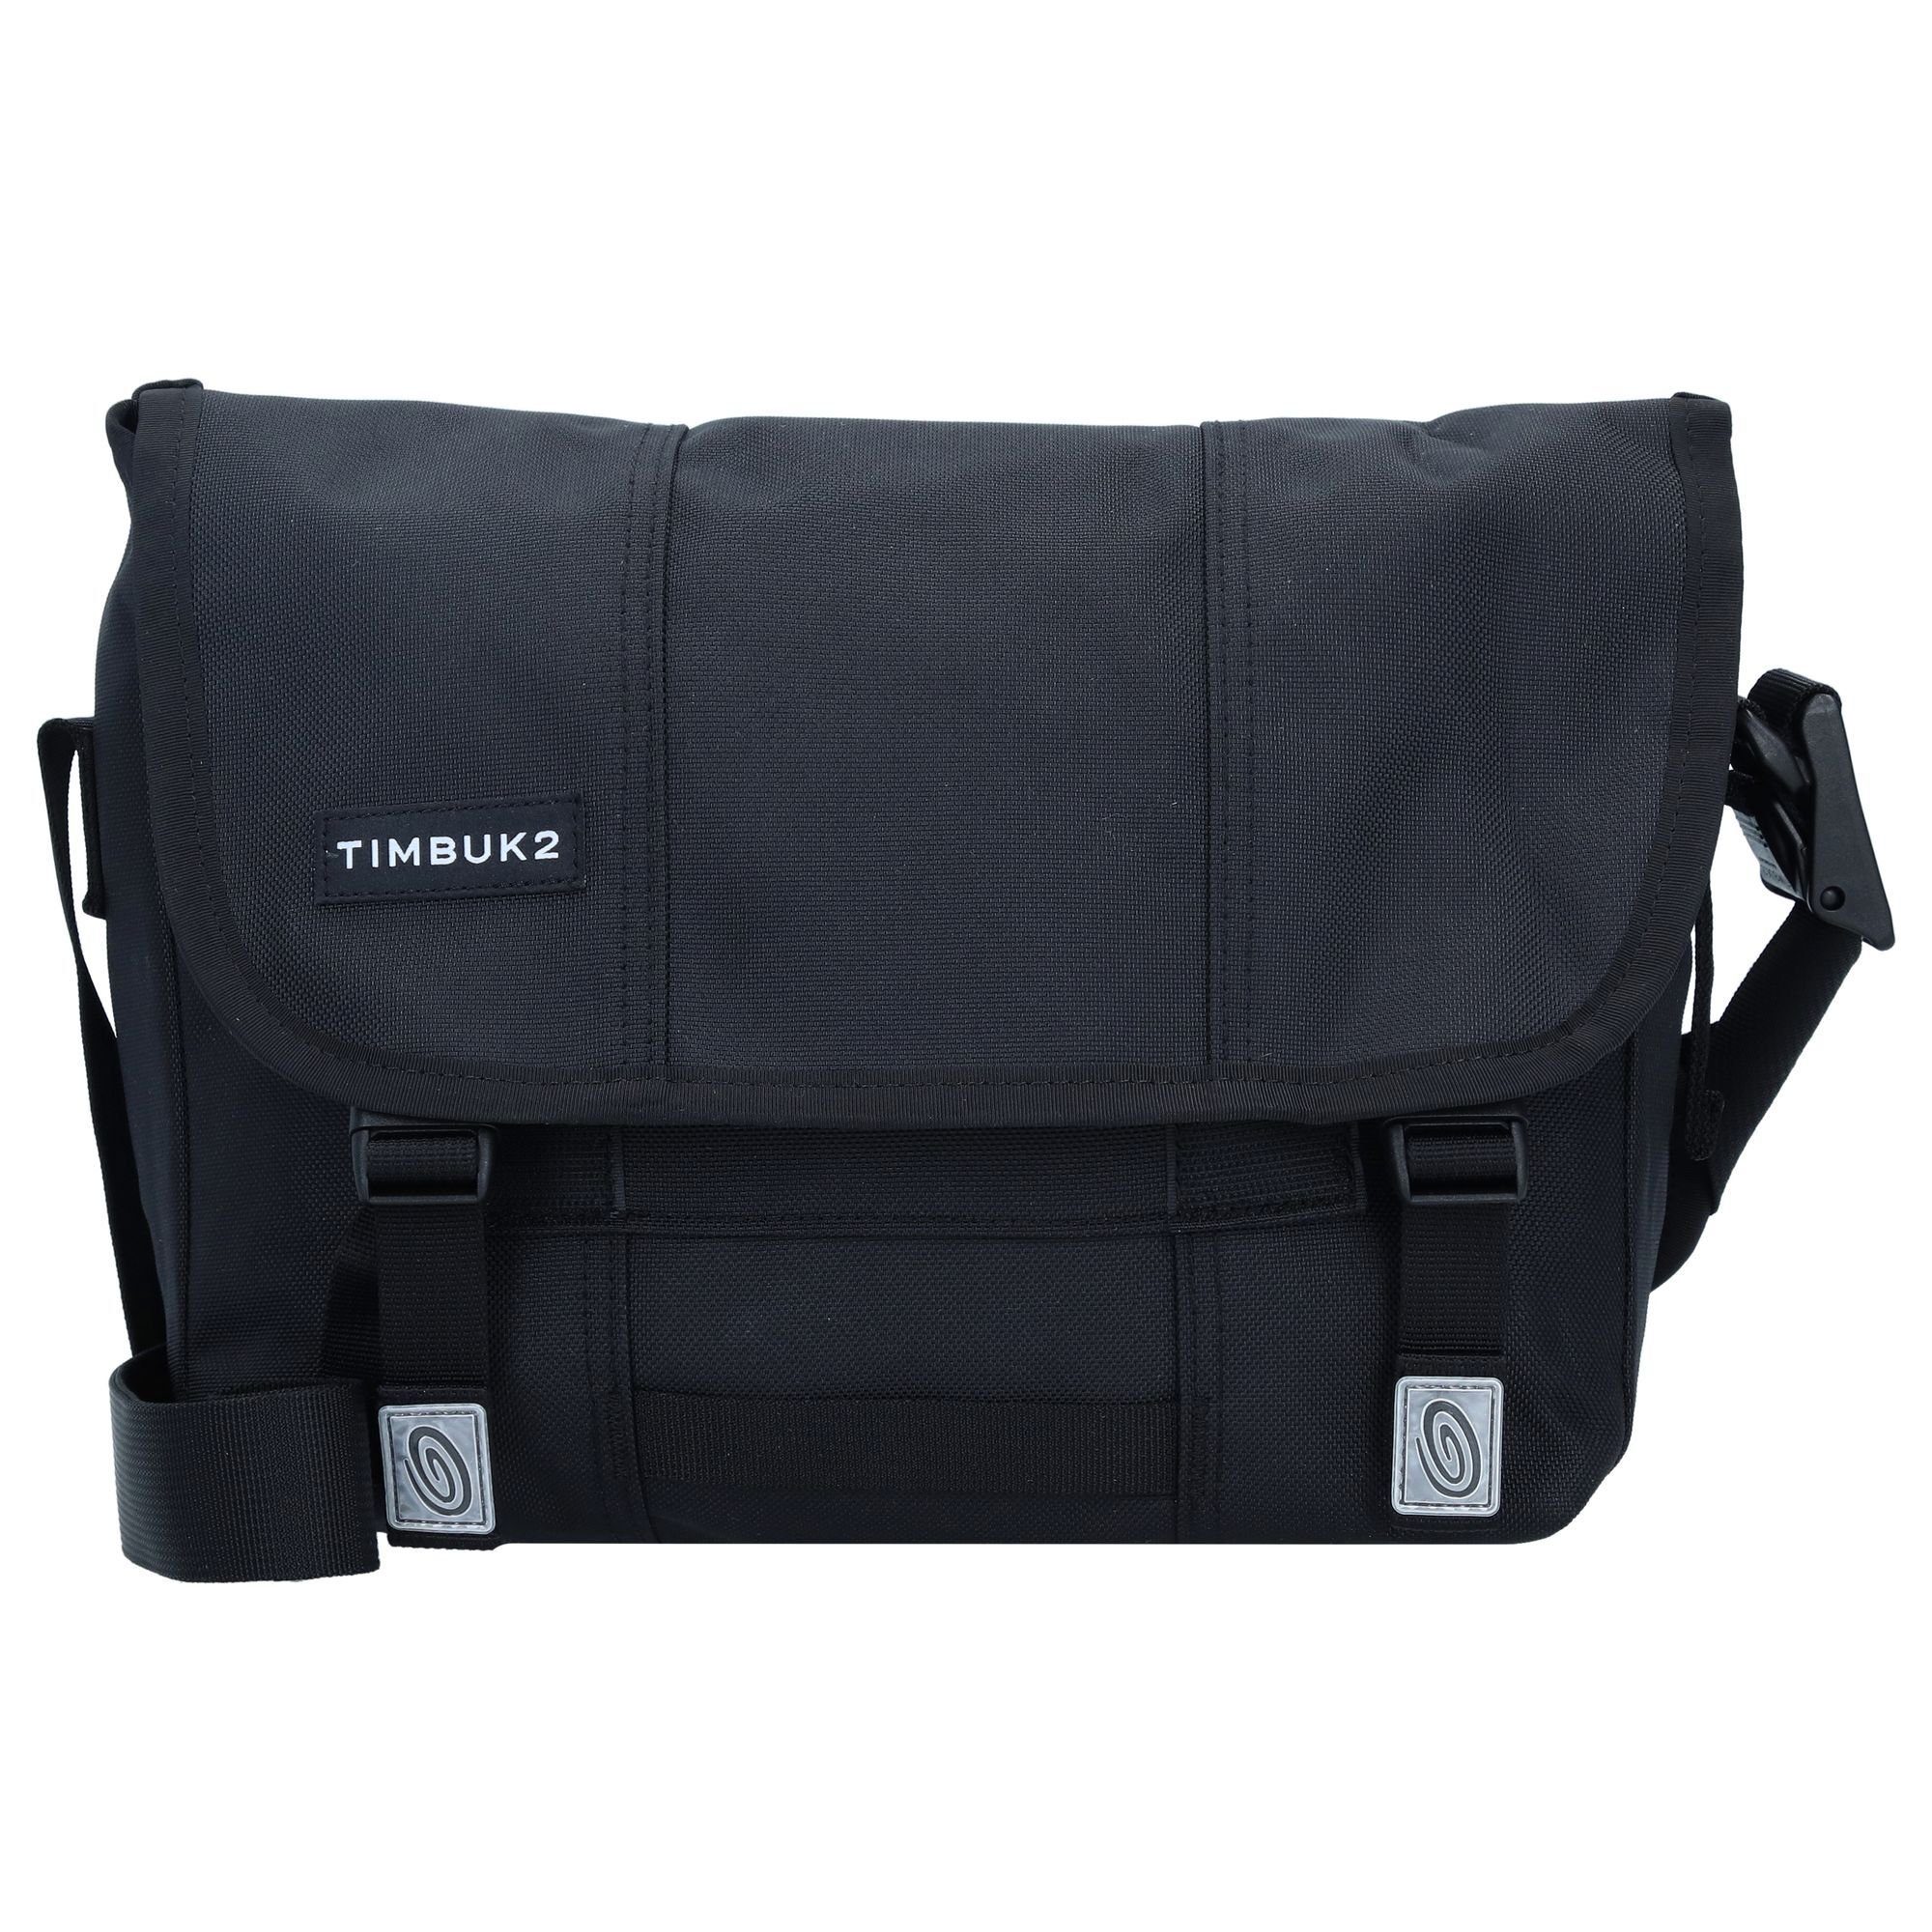 Timbuk2 Messenger Bag Heritage, Nylon eco black